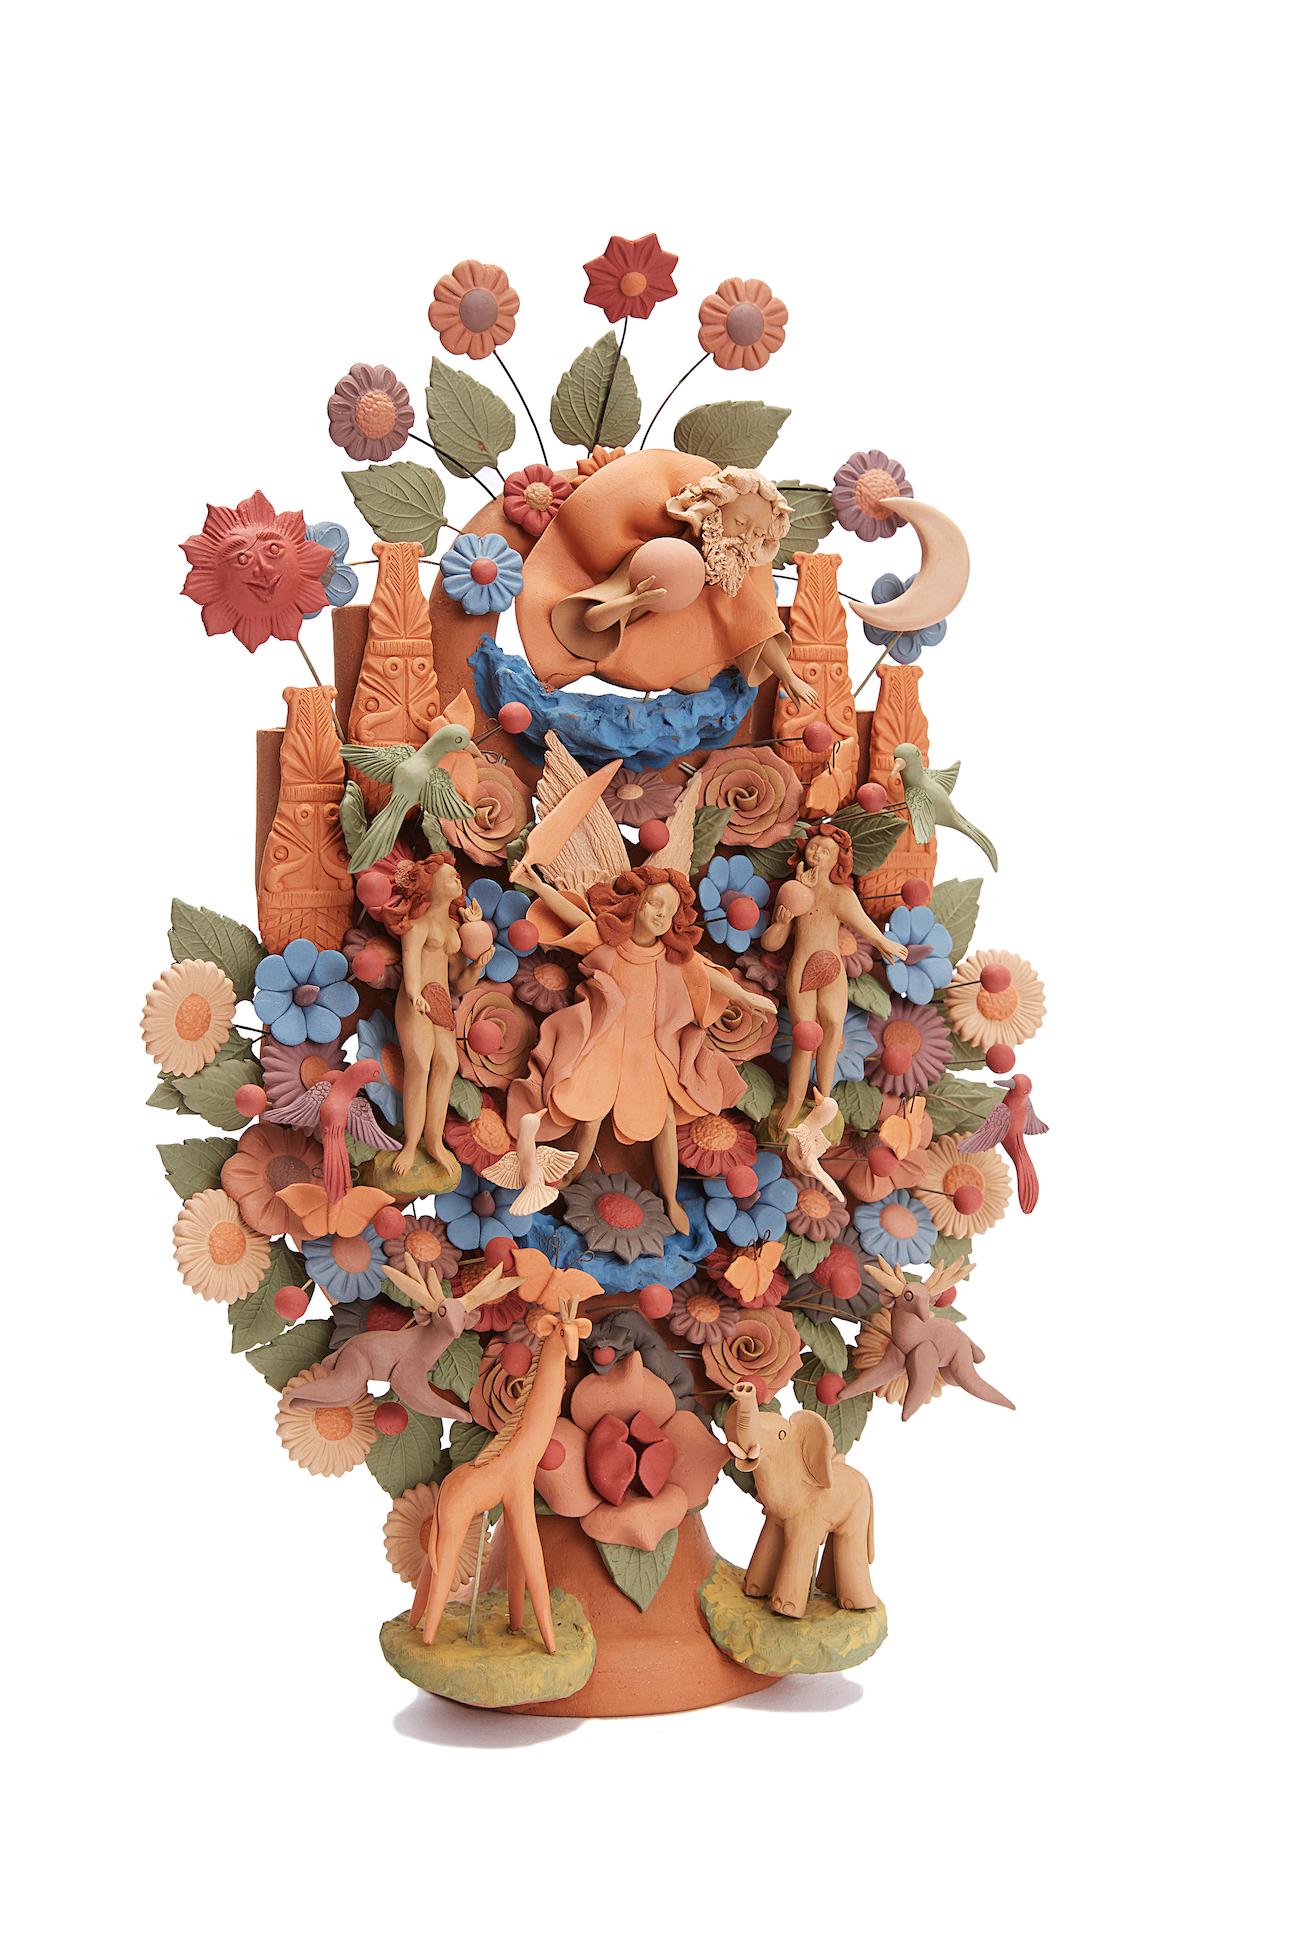 Arbol de la vida -  Tree of life  / Ceramics Mexican Folk Art Clay - Sculpture by Cecilio Sanchez Fierro